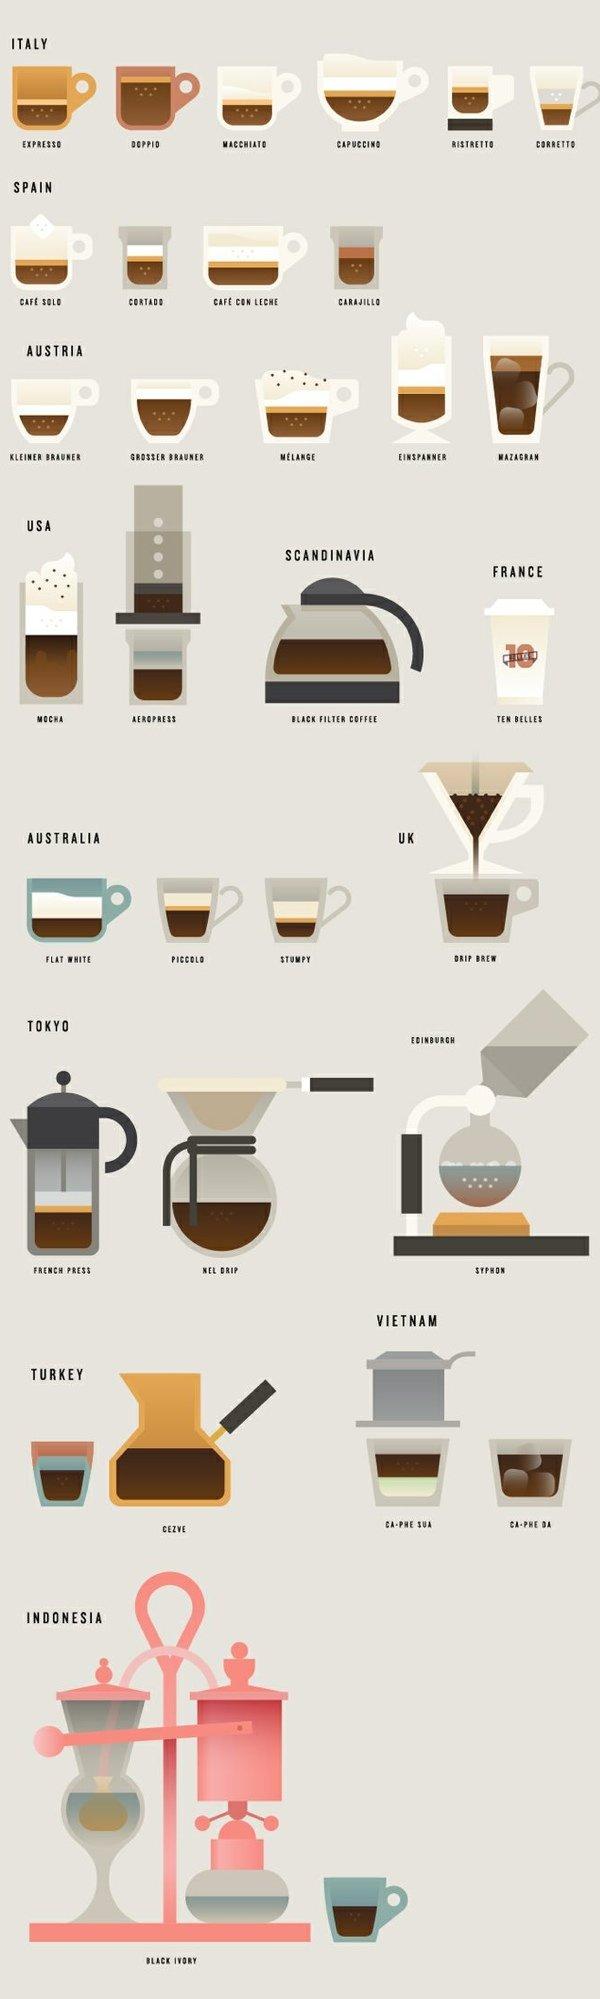 Инфографика: кофе в разных странах мира